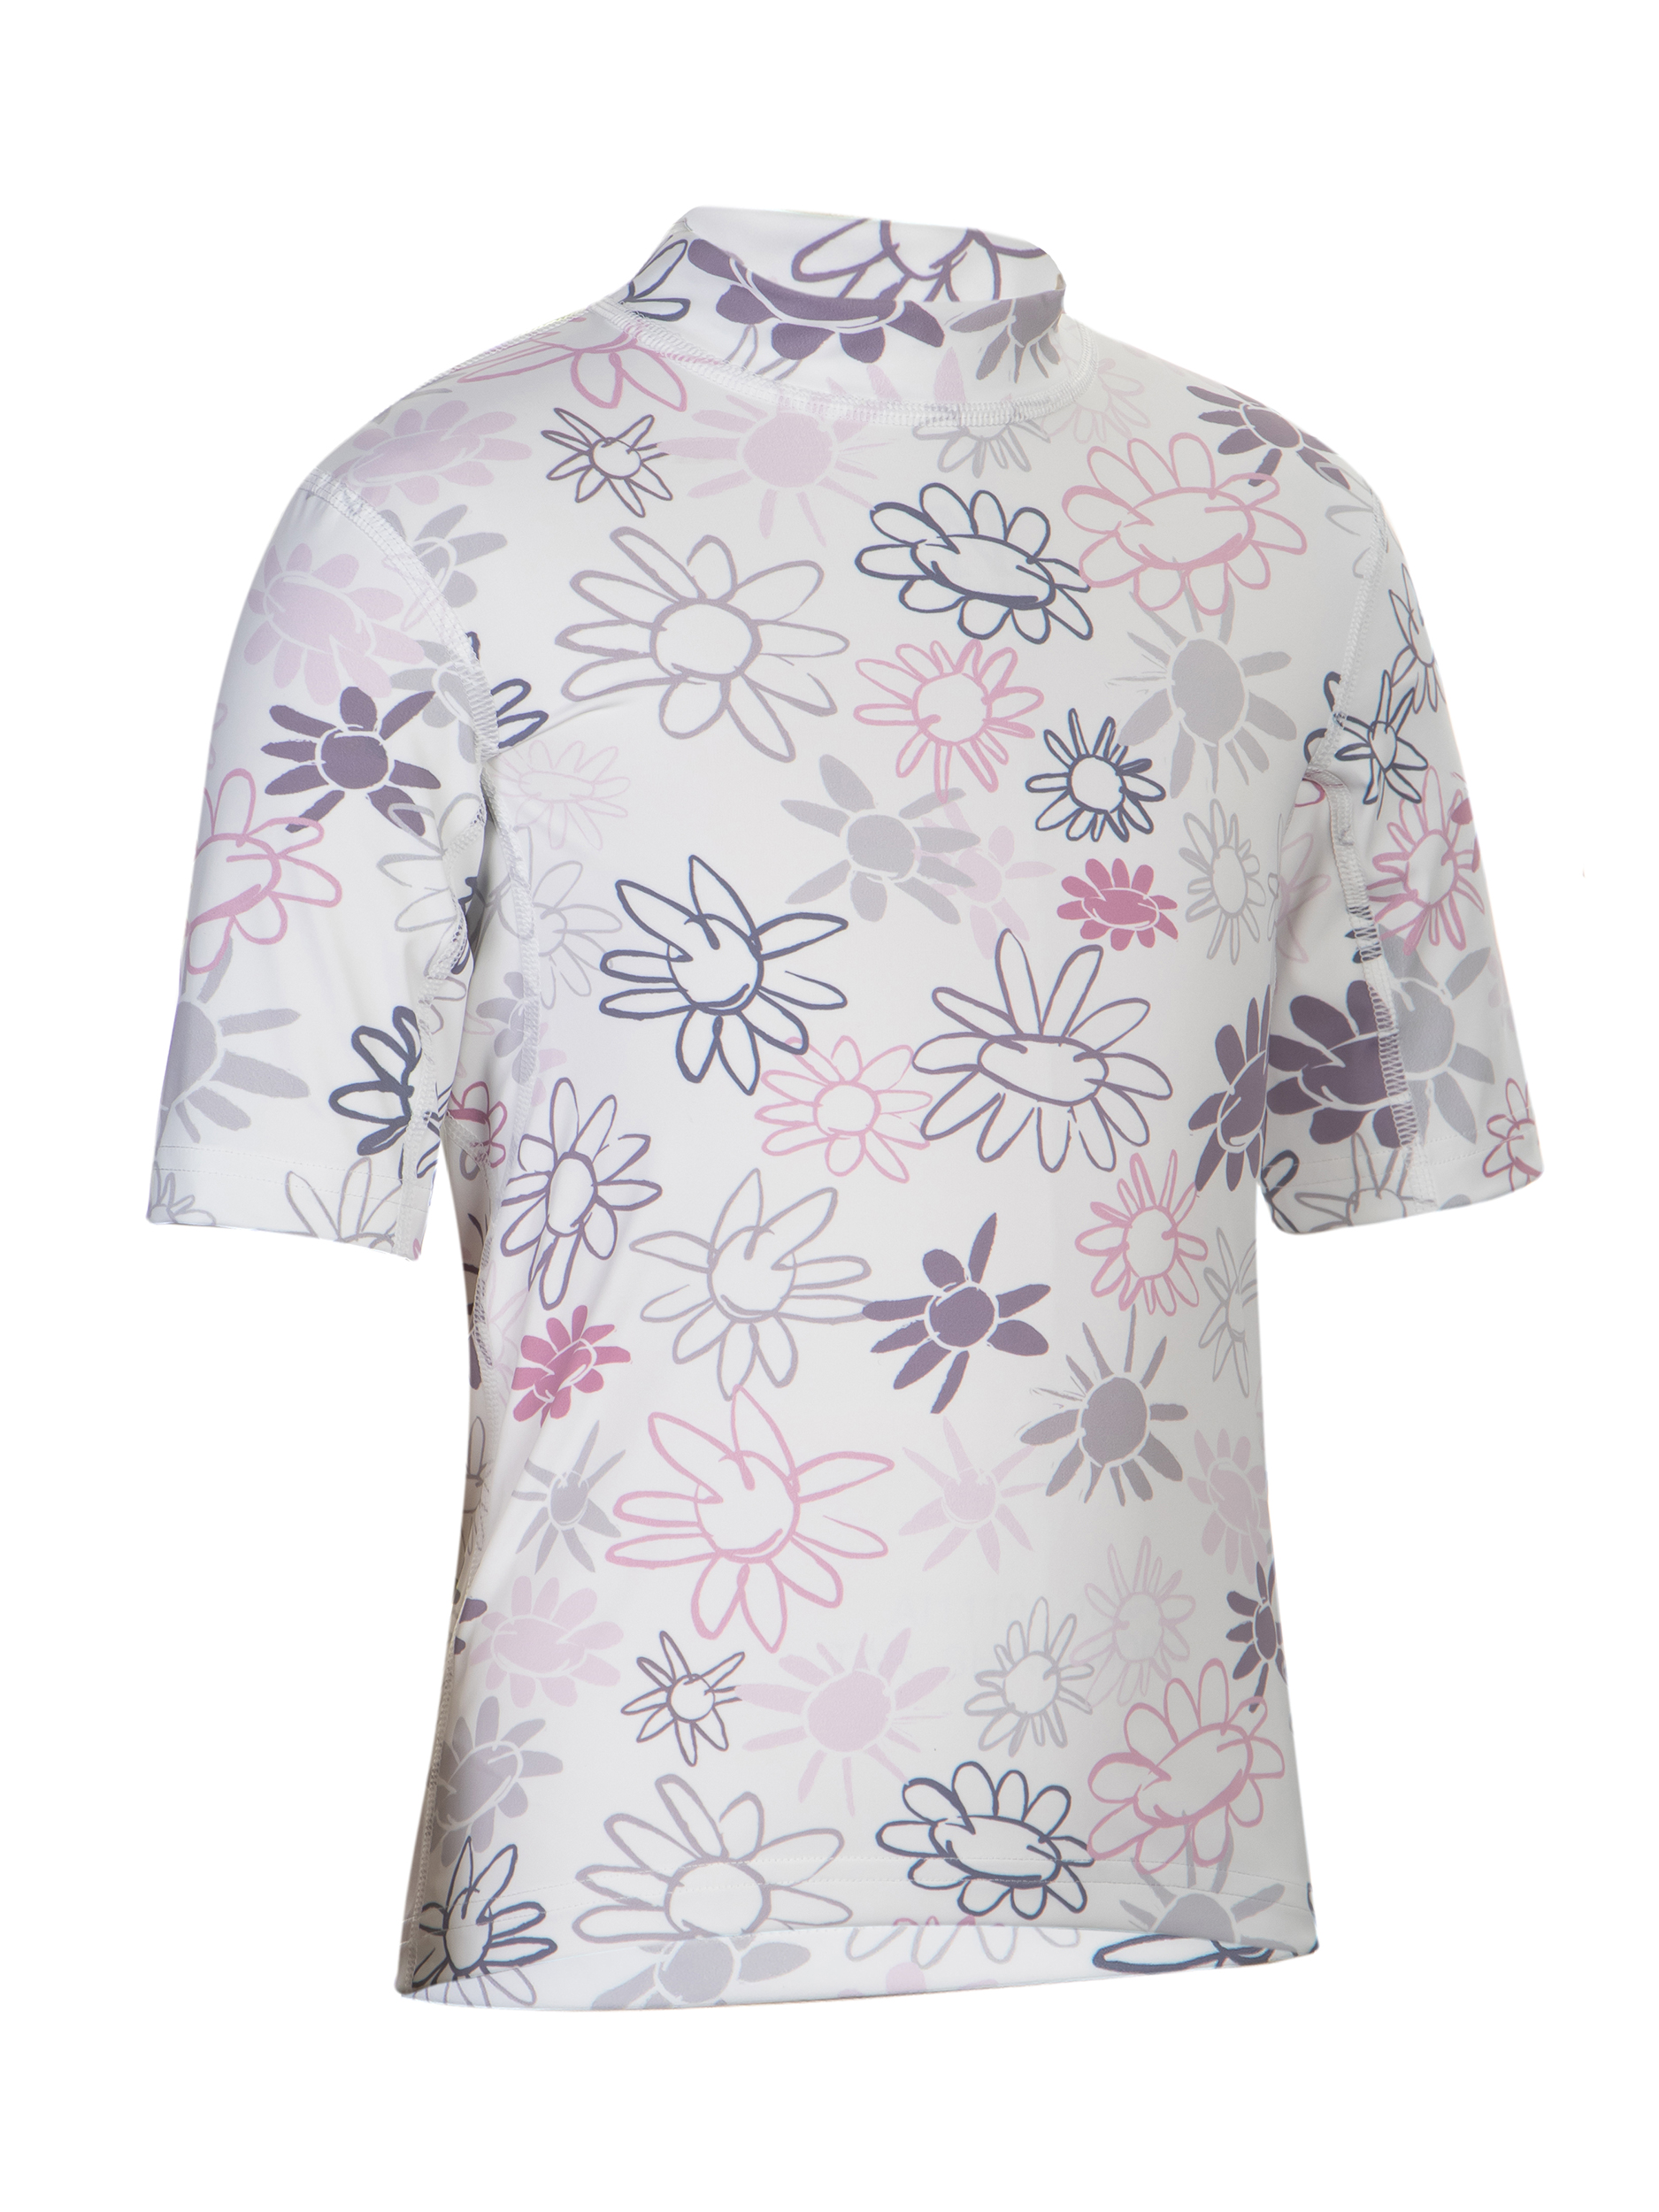 Kinder Kurzarm-Shirt ‘wild flowers‘ mit UPF 80 von Hyphen